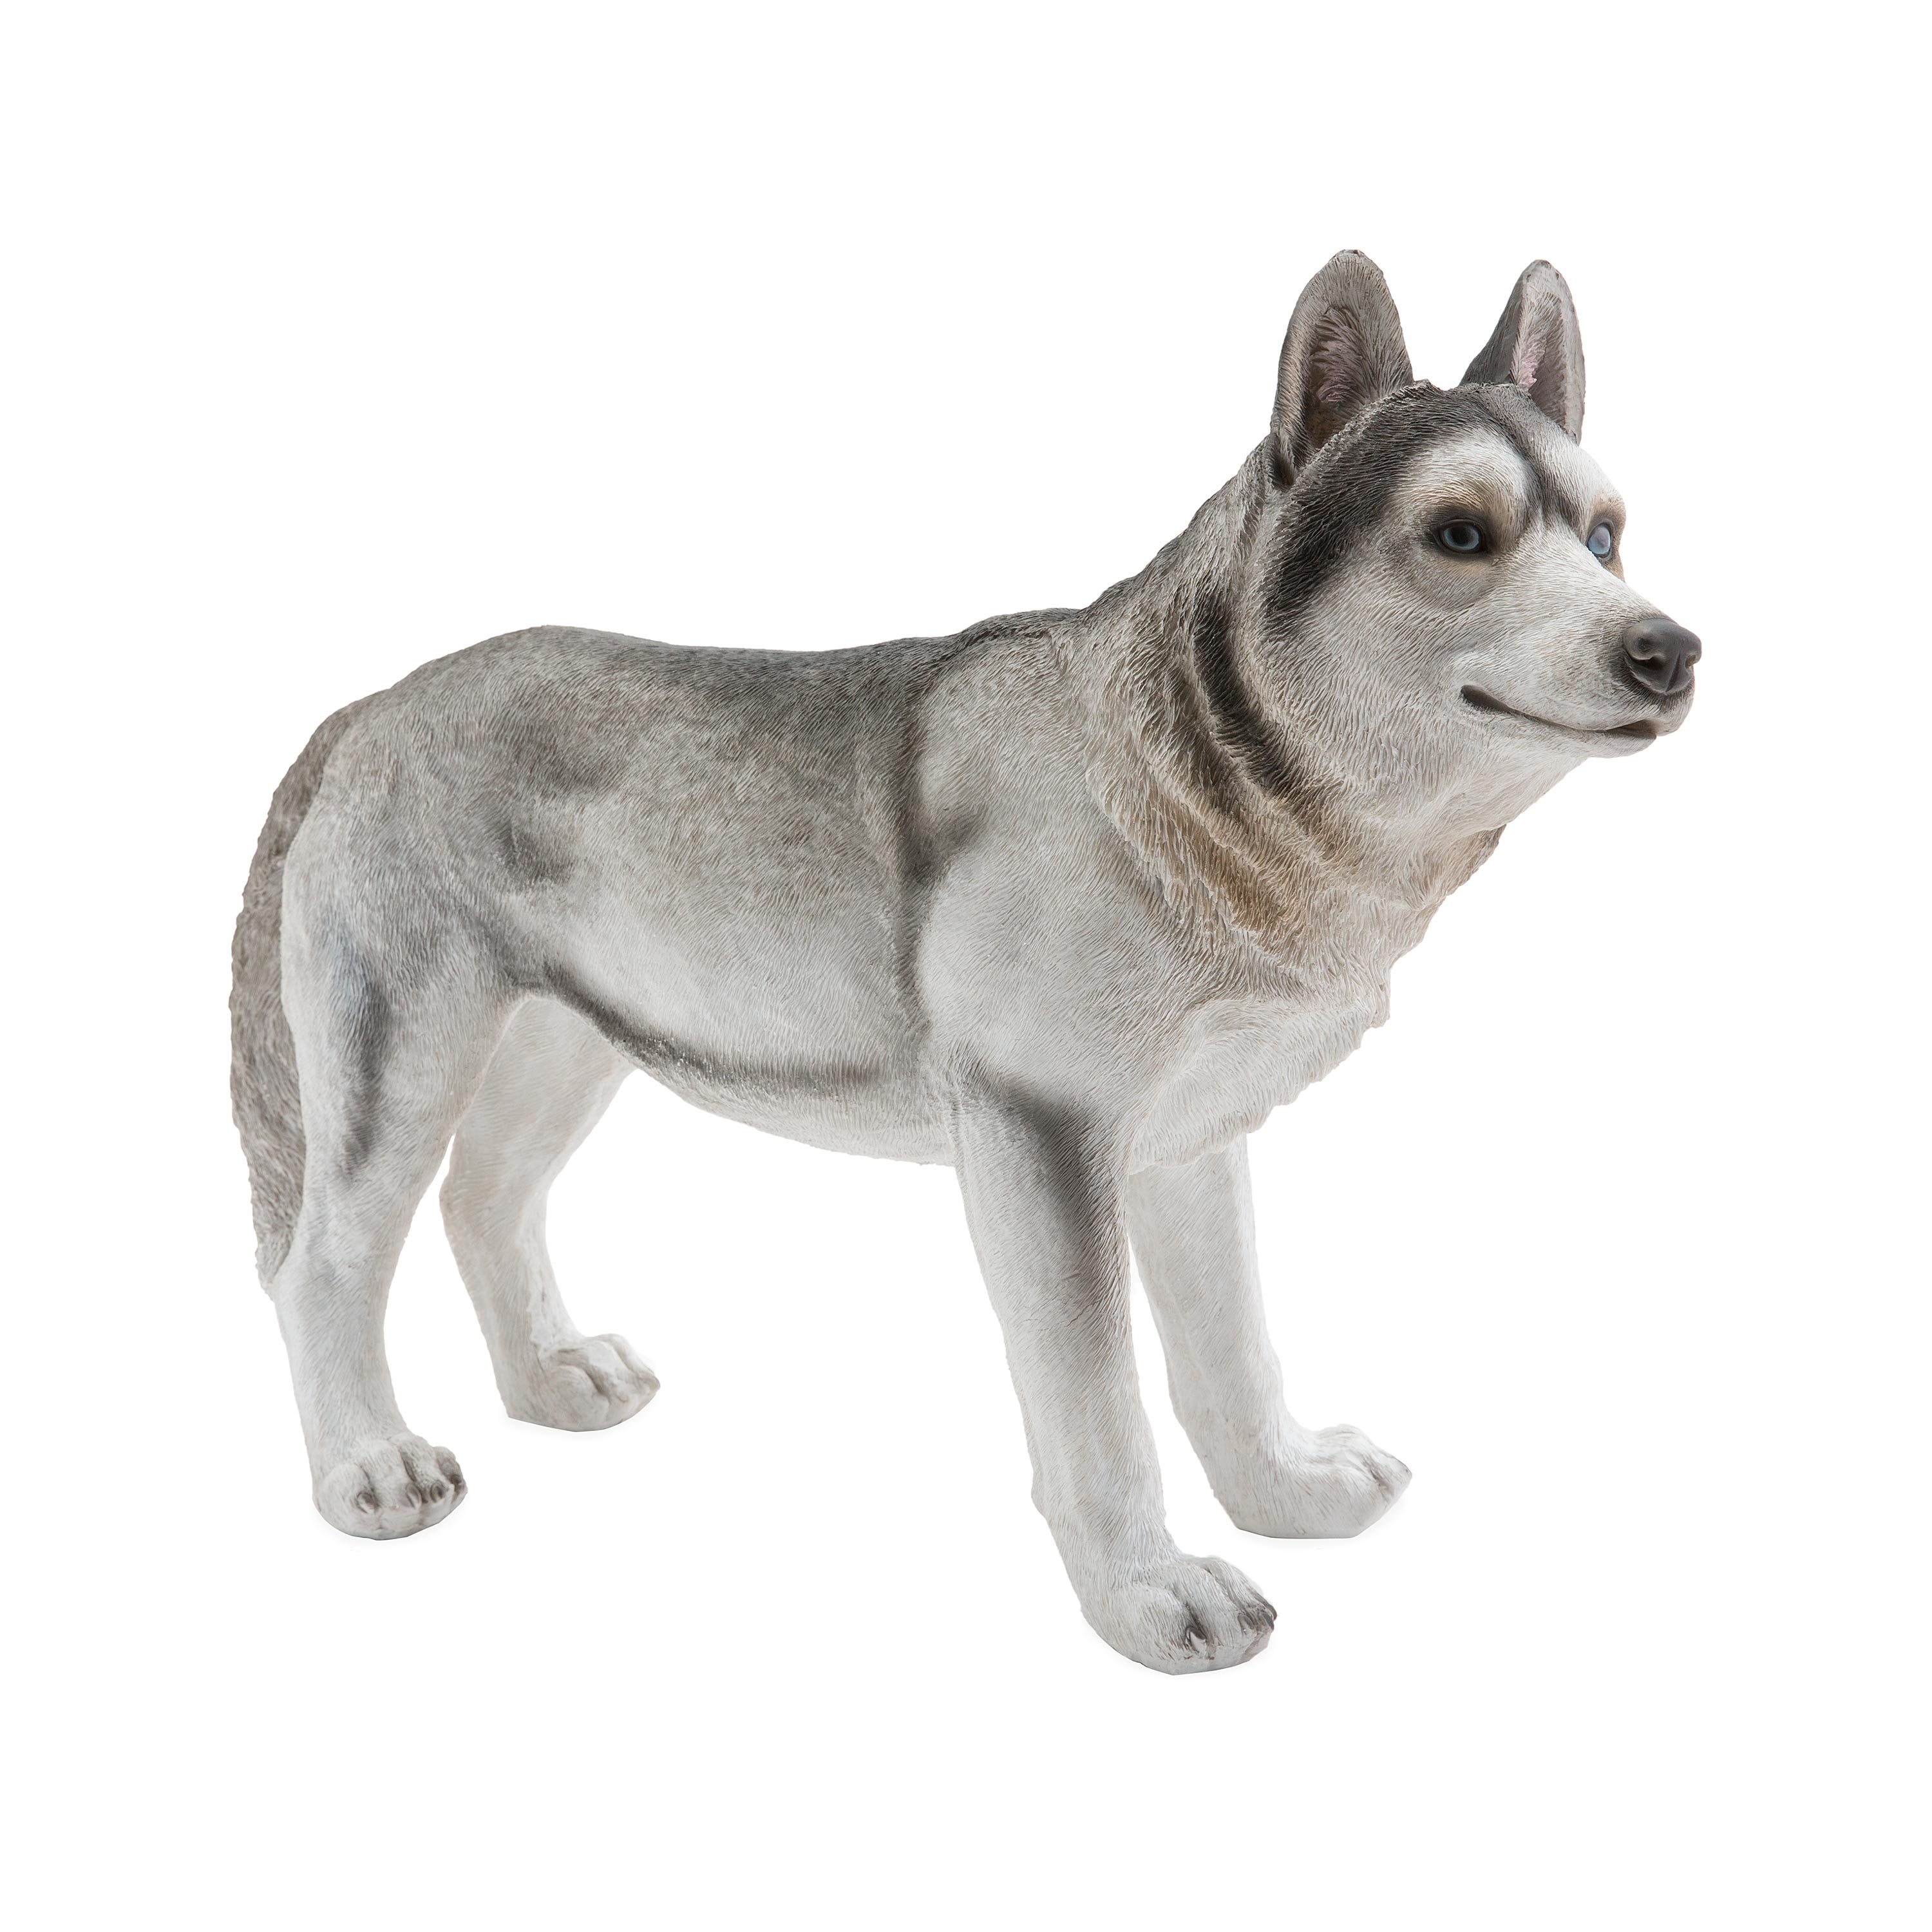 Siberian Husky Dog Statue